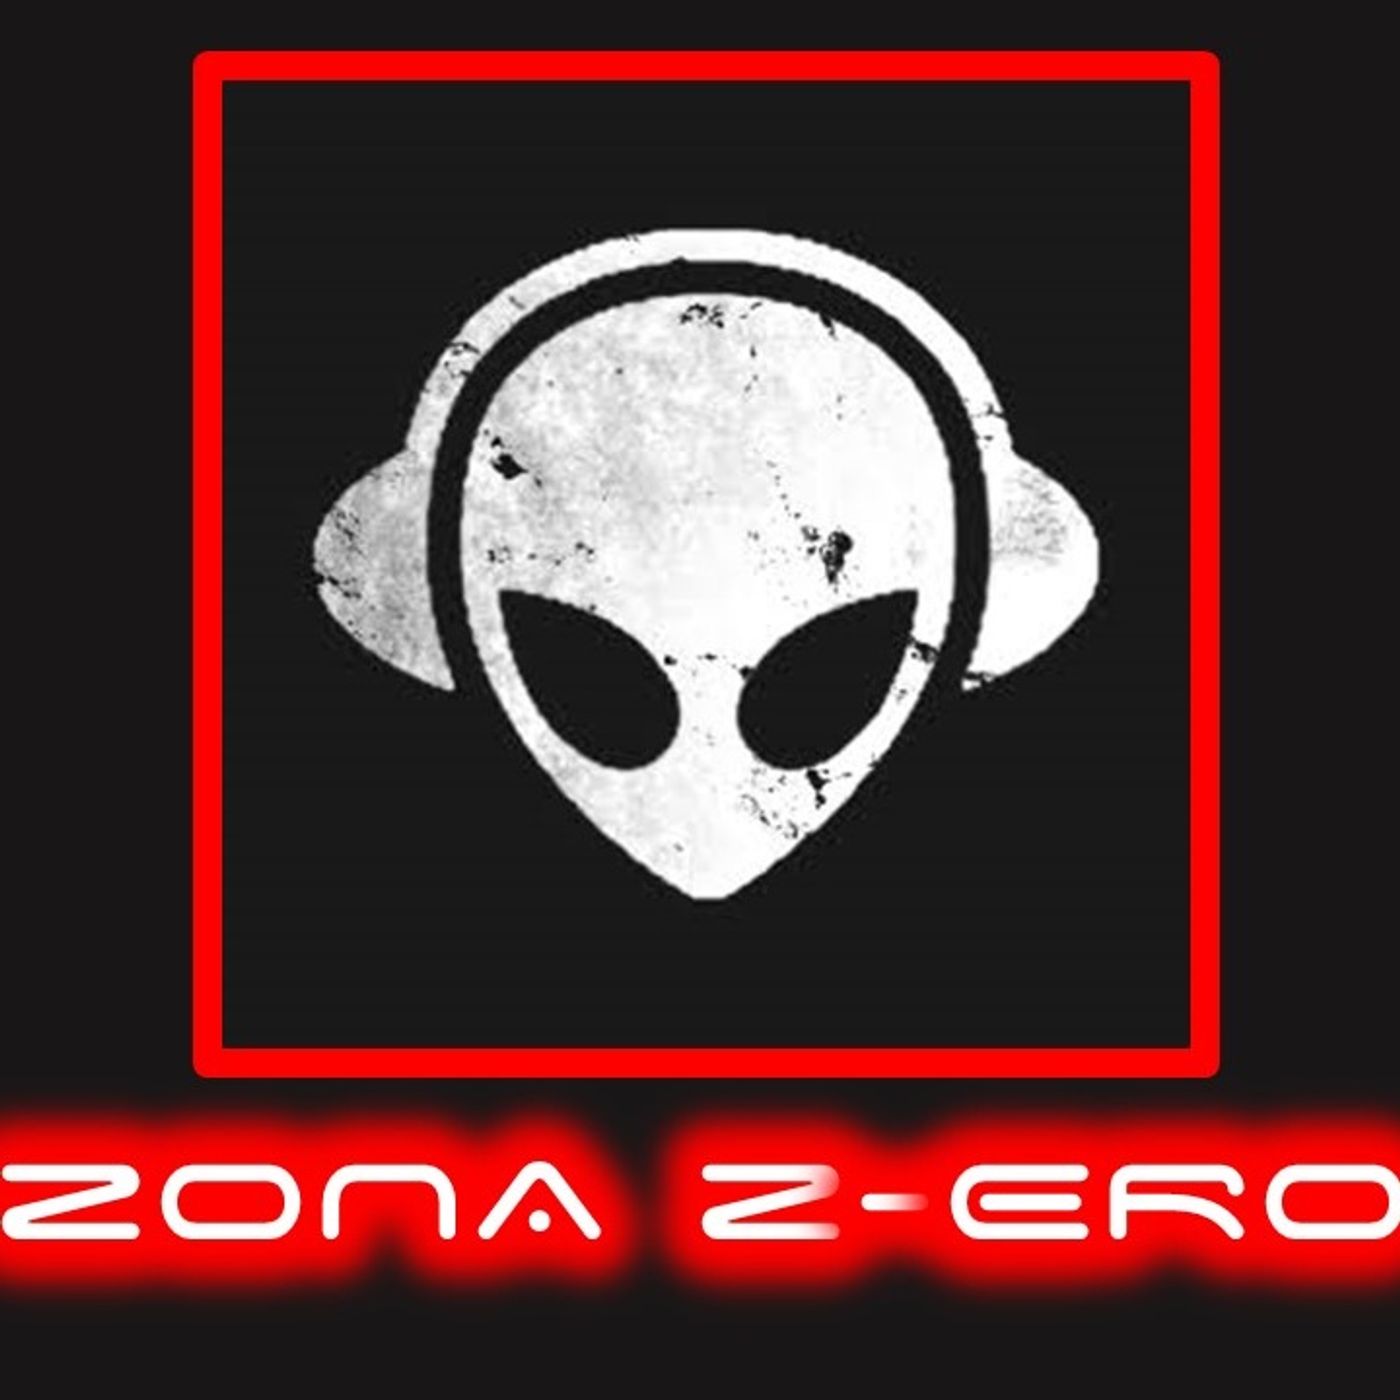 Zona Z-ero